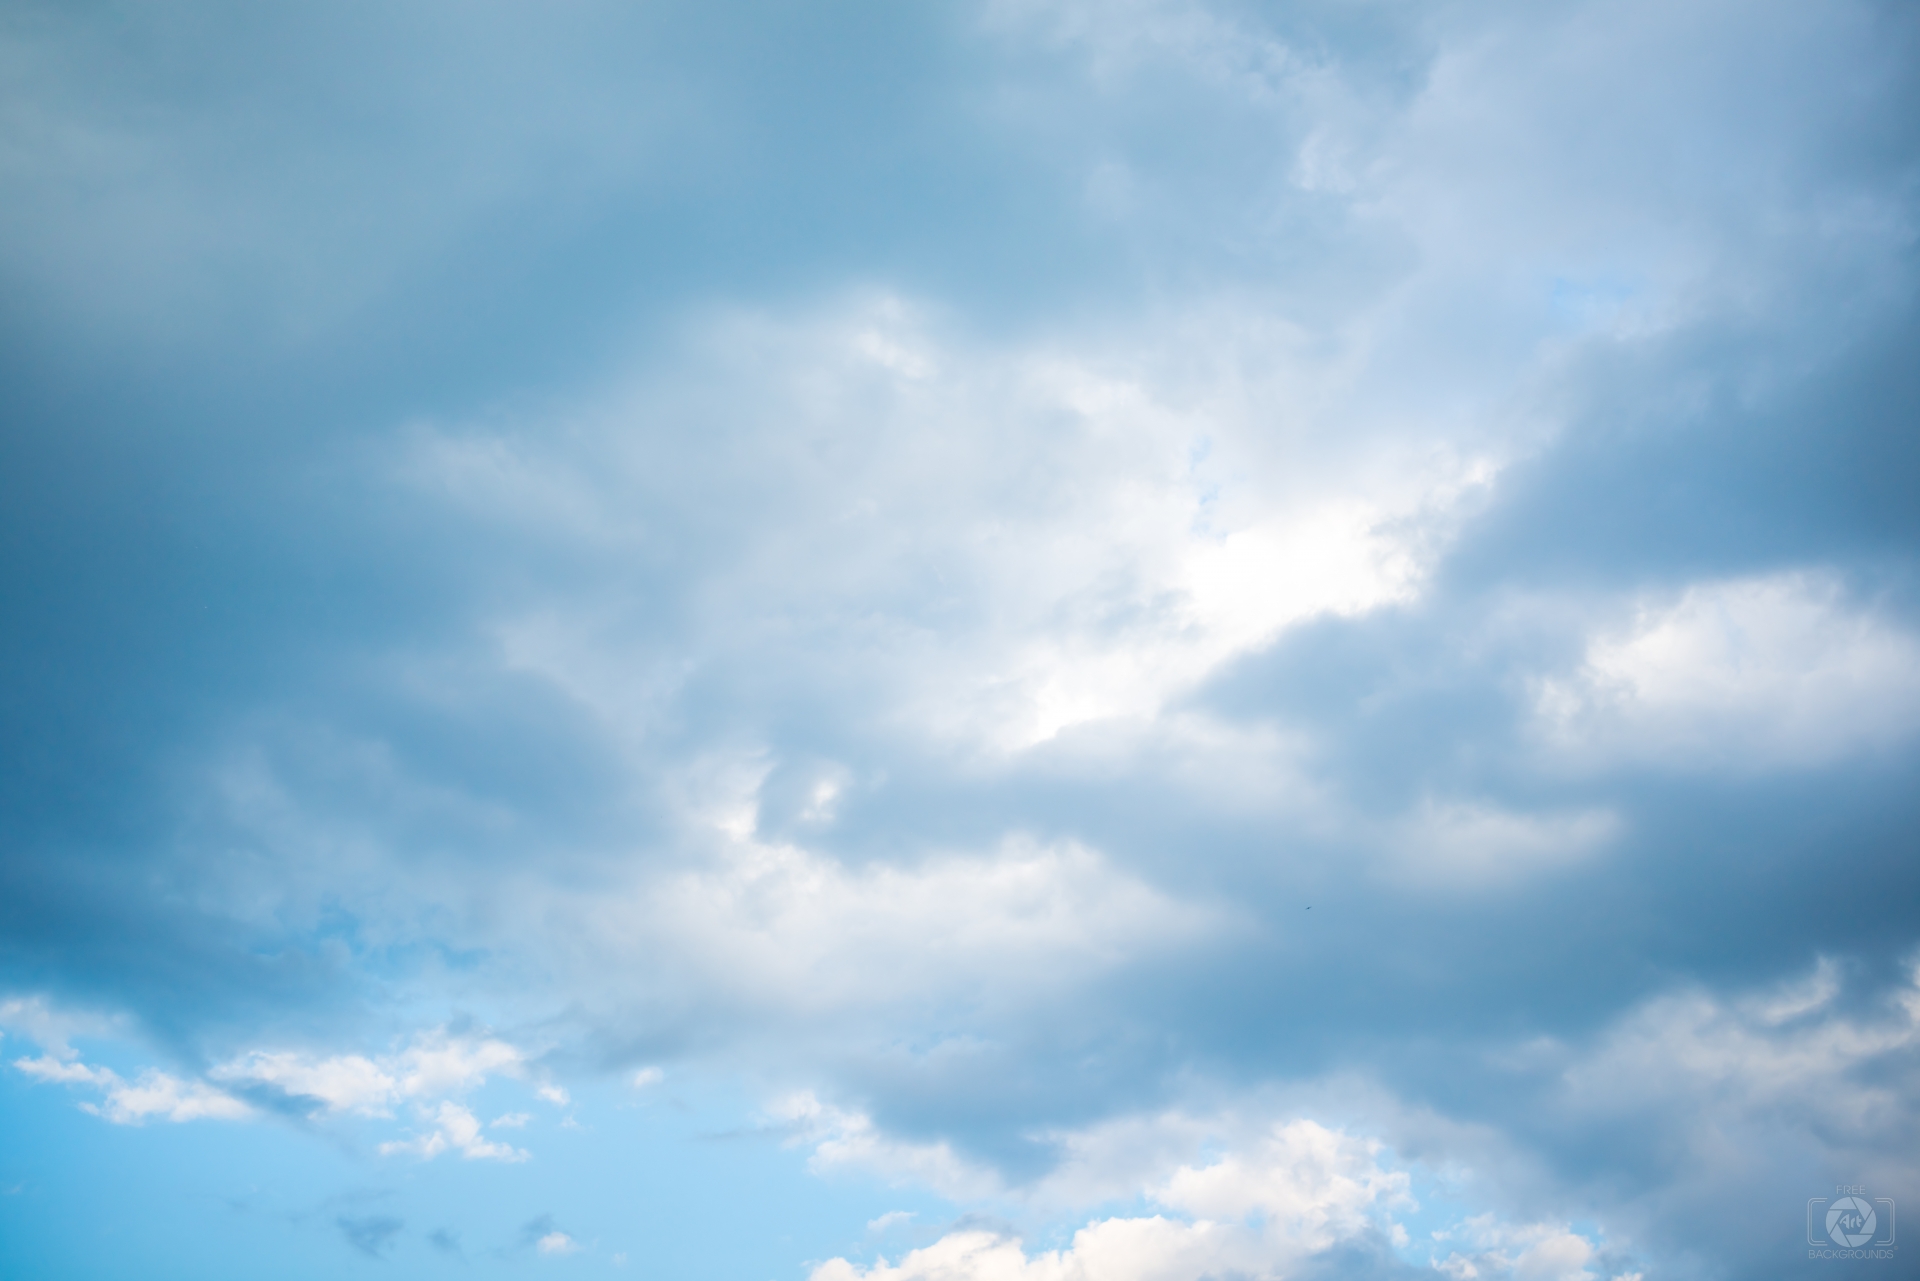 Nền đồ họa mây xanh dương mang đến sự tươi mới và thanh thoát cho bất kì thiết kế nào. Với những chi tiết mây xanh dương tinh tế, nền đồ họa này sẽ khiến công việc của bạn trở nên dễ dàng hơn và không kém phần thu hút. Hãy trải nghiệm sự khác biệt với nền đồ họa mây xanh dương này ngay hôm nay.